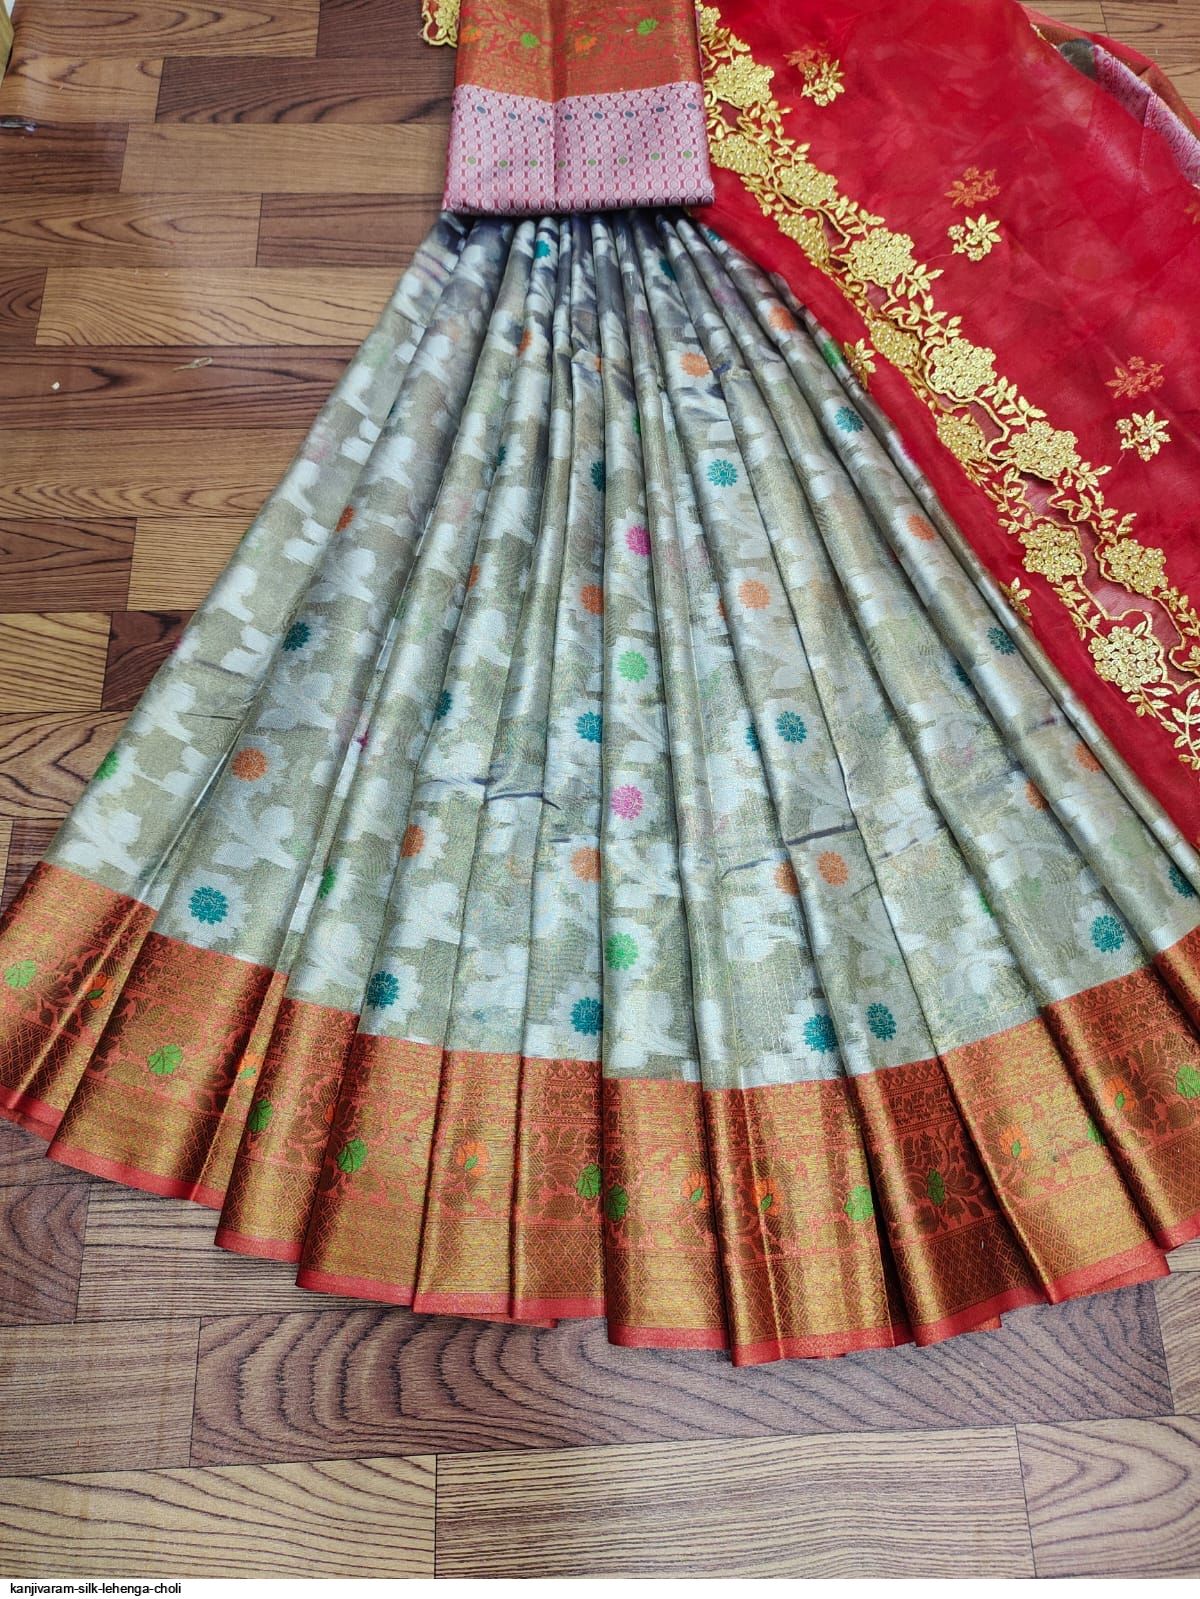 Kanjivaram Pure Silk Half Saree Lehenga Choli With Blouse And Dupatta at Rs  2699 | सिल्क लहंगा - Prathmesh Enterprises, Mumbai | ID: 26133602755